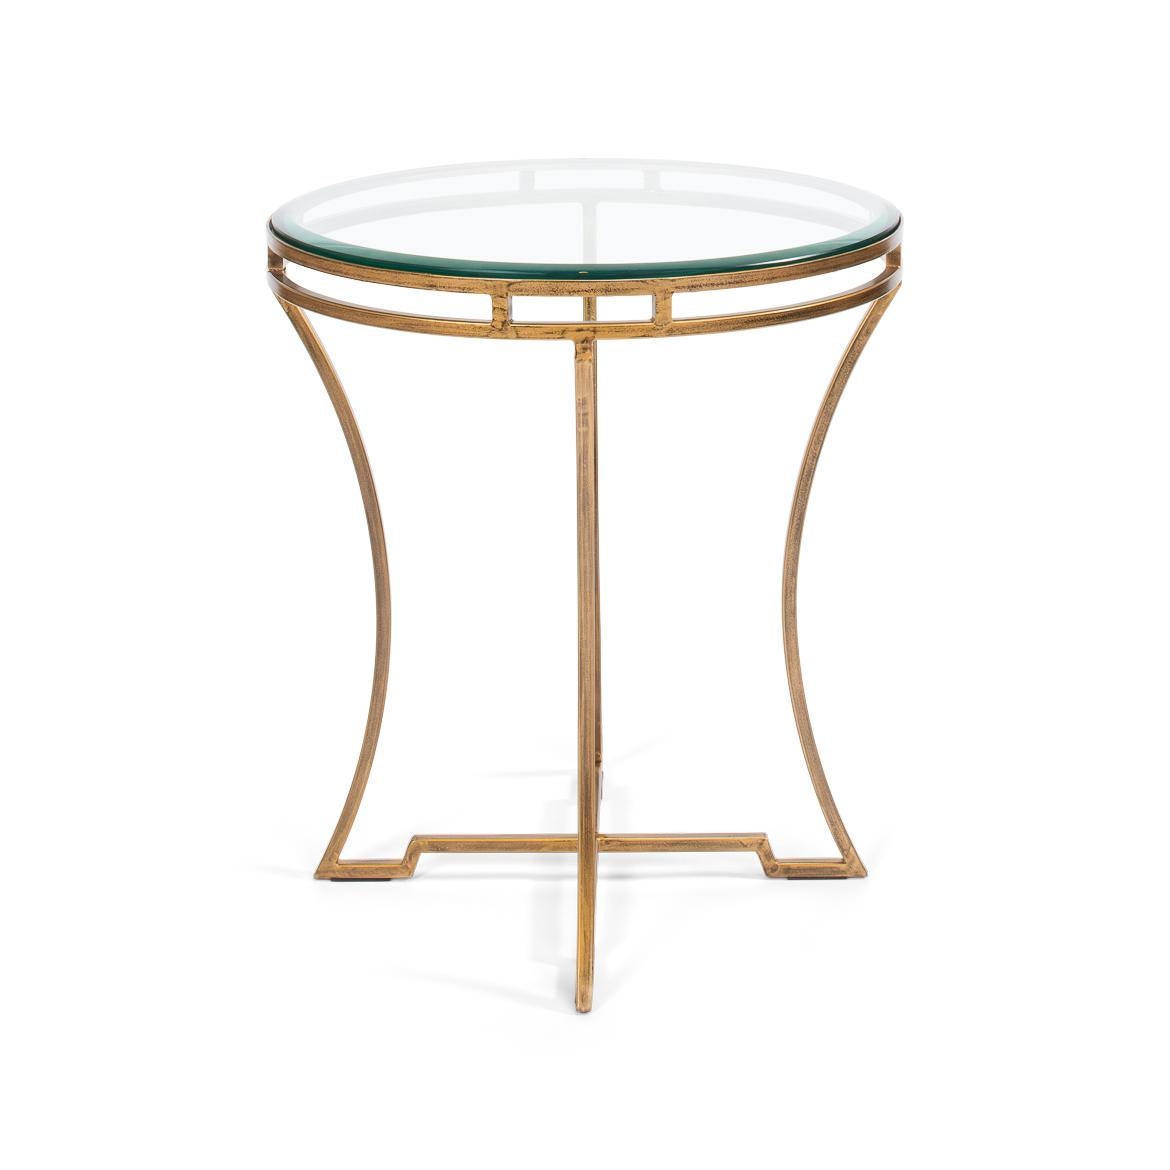 Dieses Stück besticht durch sein minimalistisches Design, das durch eine warme, goldene Oberfläche aufgewertet wird, die Eleganz und Exklusivität ausstrahlt. Der Tisch hat eine runde, klare Glasplatte, die das durchbrochene, vergoldete Eisengestell